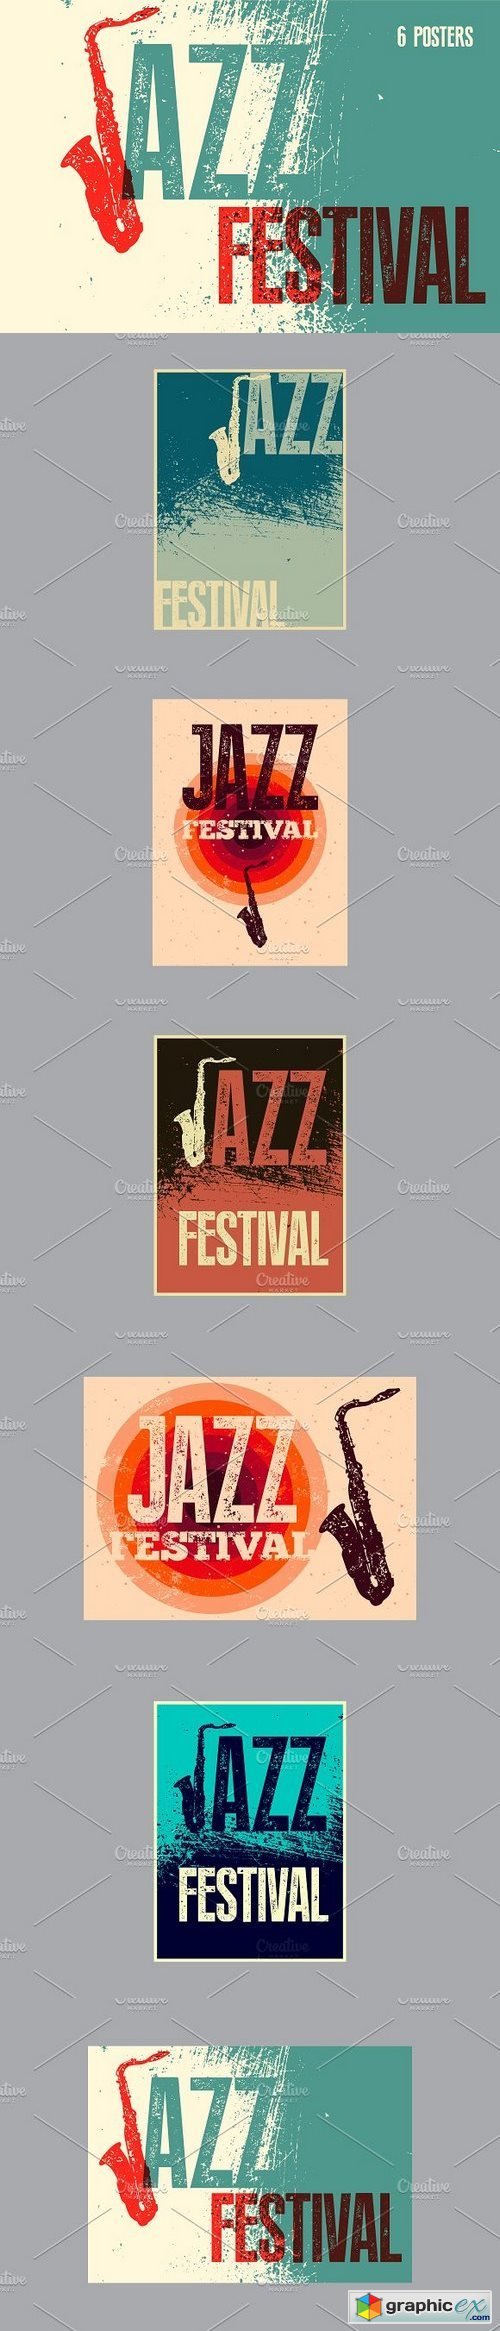 Jazz Festival typographic poster